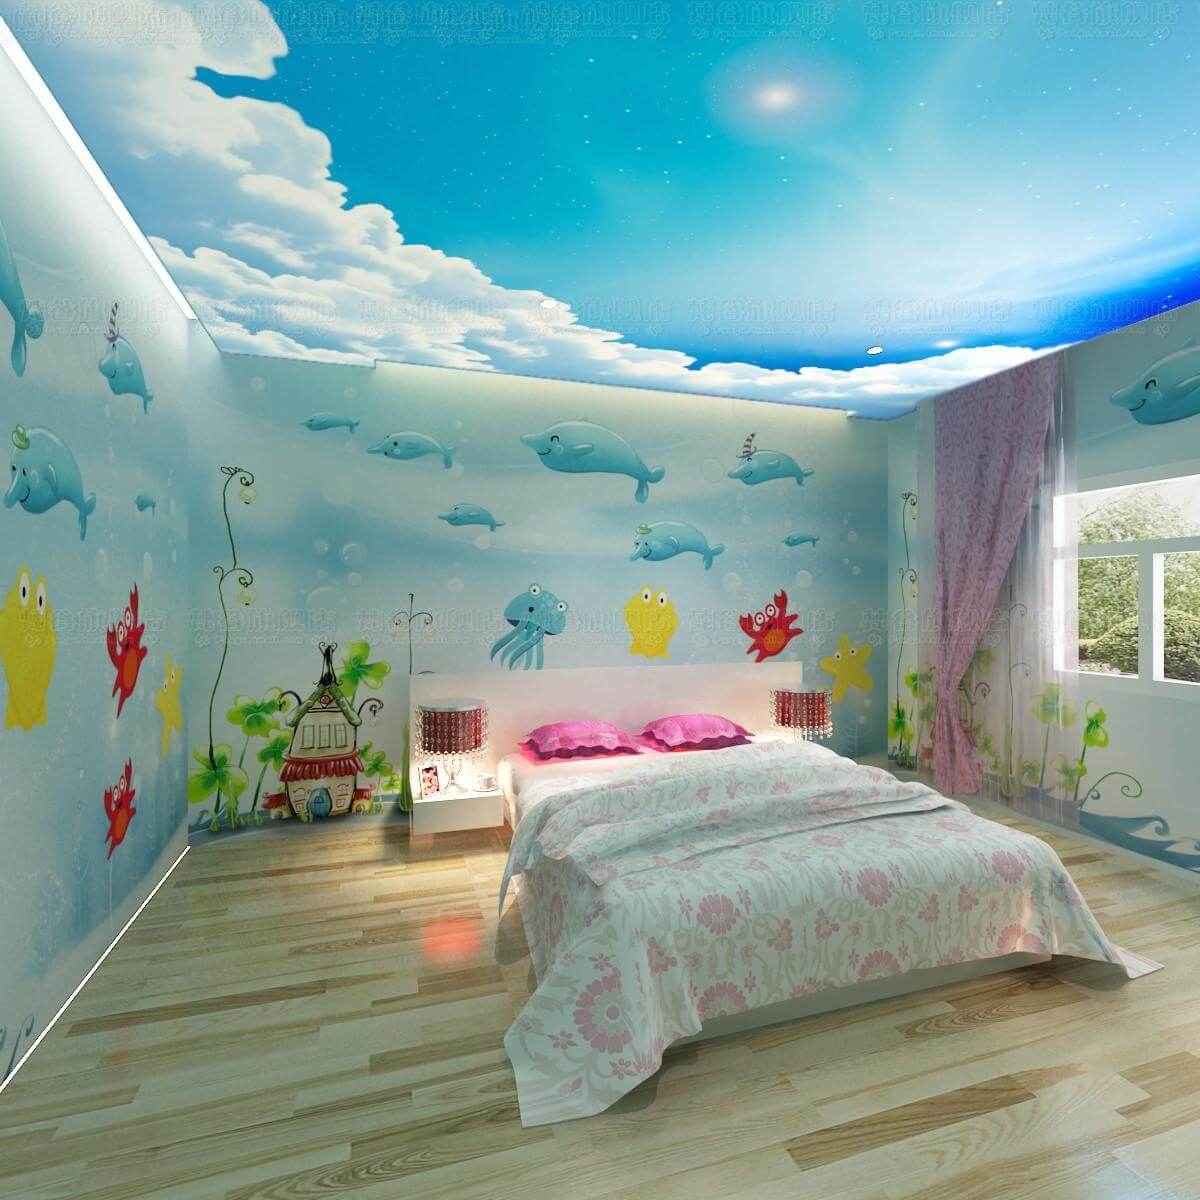 Attractive Kids’ Room Designs